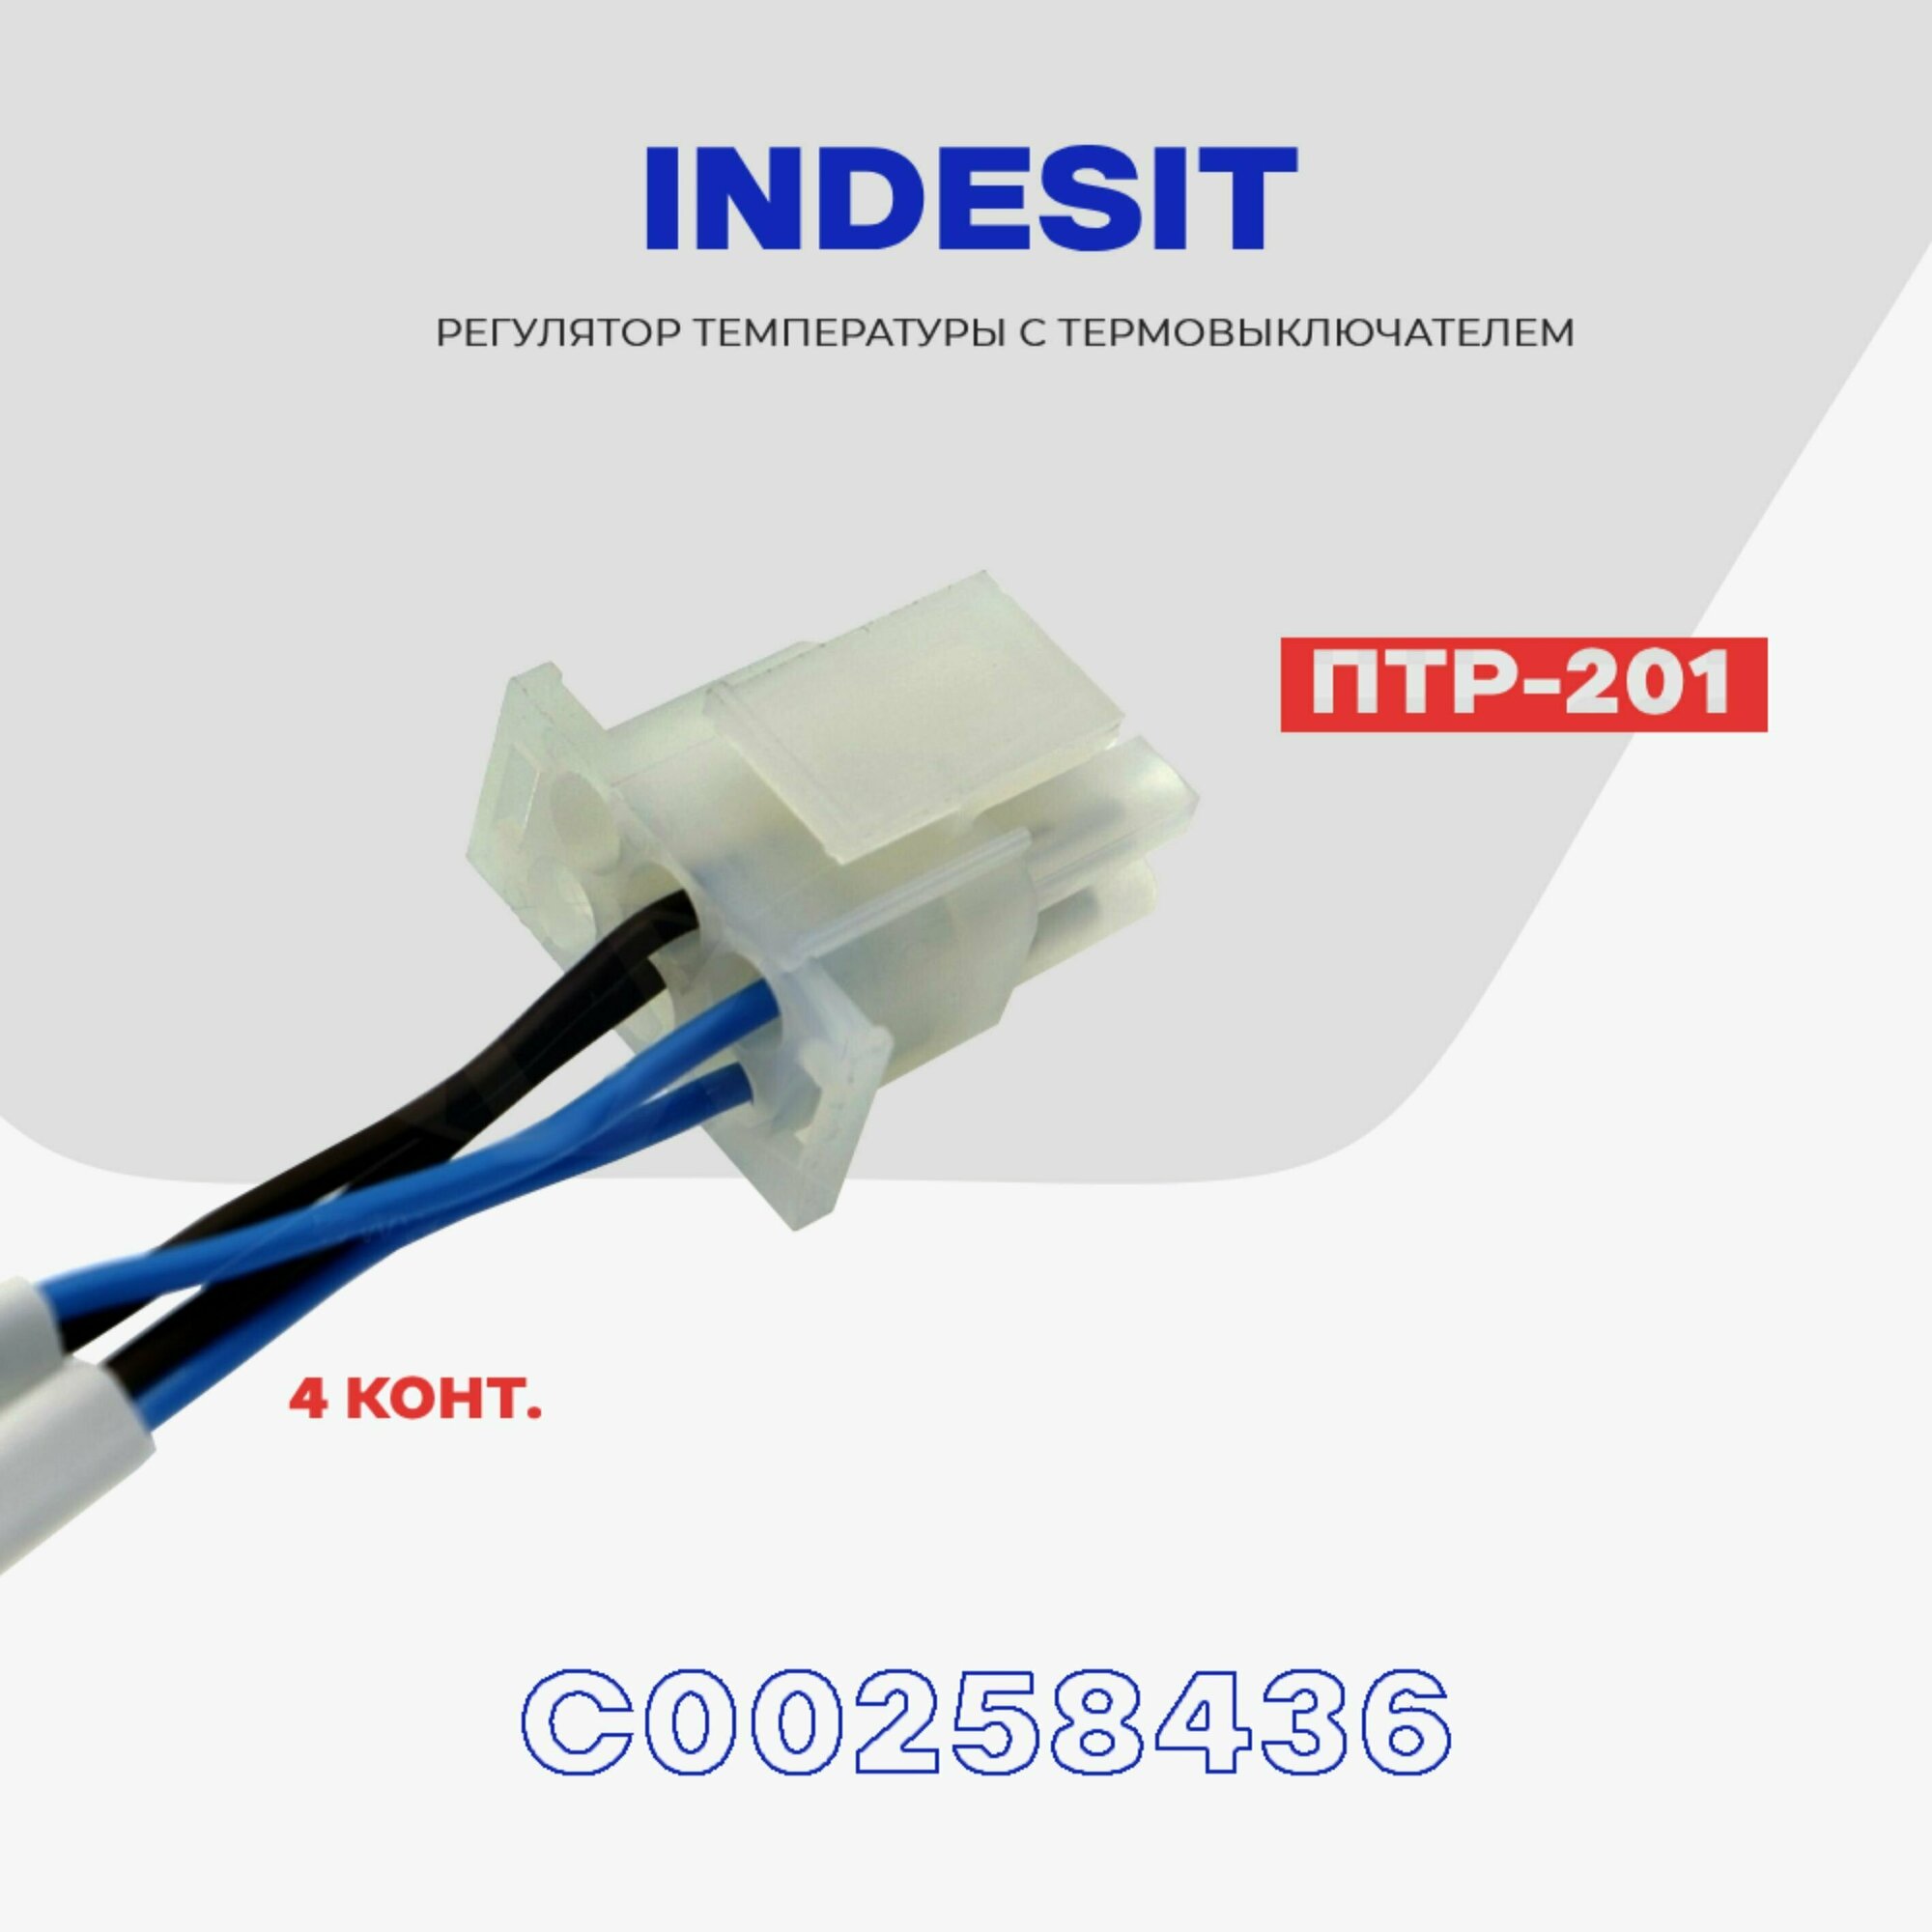 Тепловое реле для холодильника Indesit ПТР-201 (C00258436) / Термопредохранитель оттайки на 4 контакта NO Frost